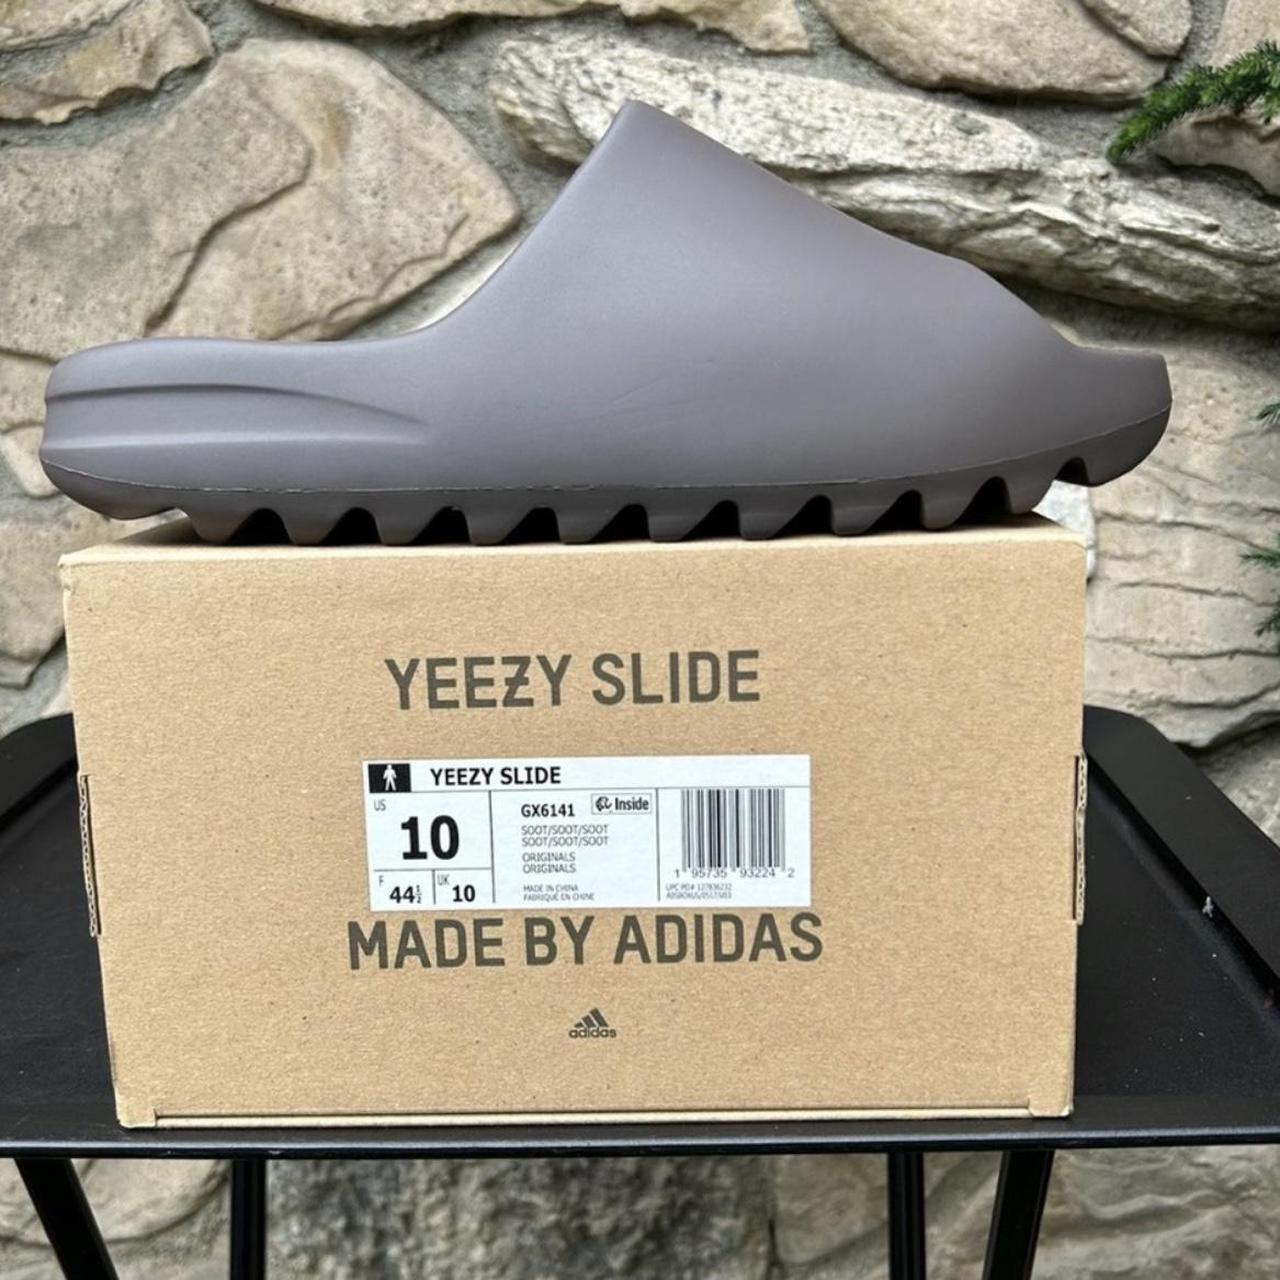 Adidas Yeezy Slide “Soot” 2021 Size 10 Men Brand... - Depop